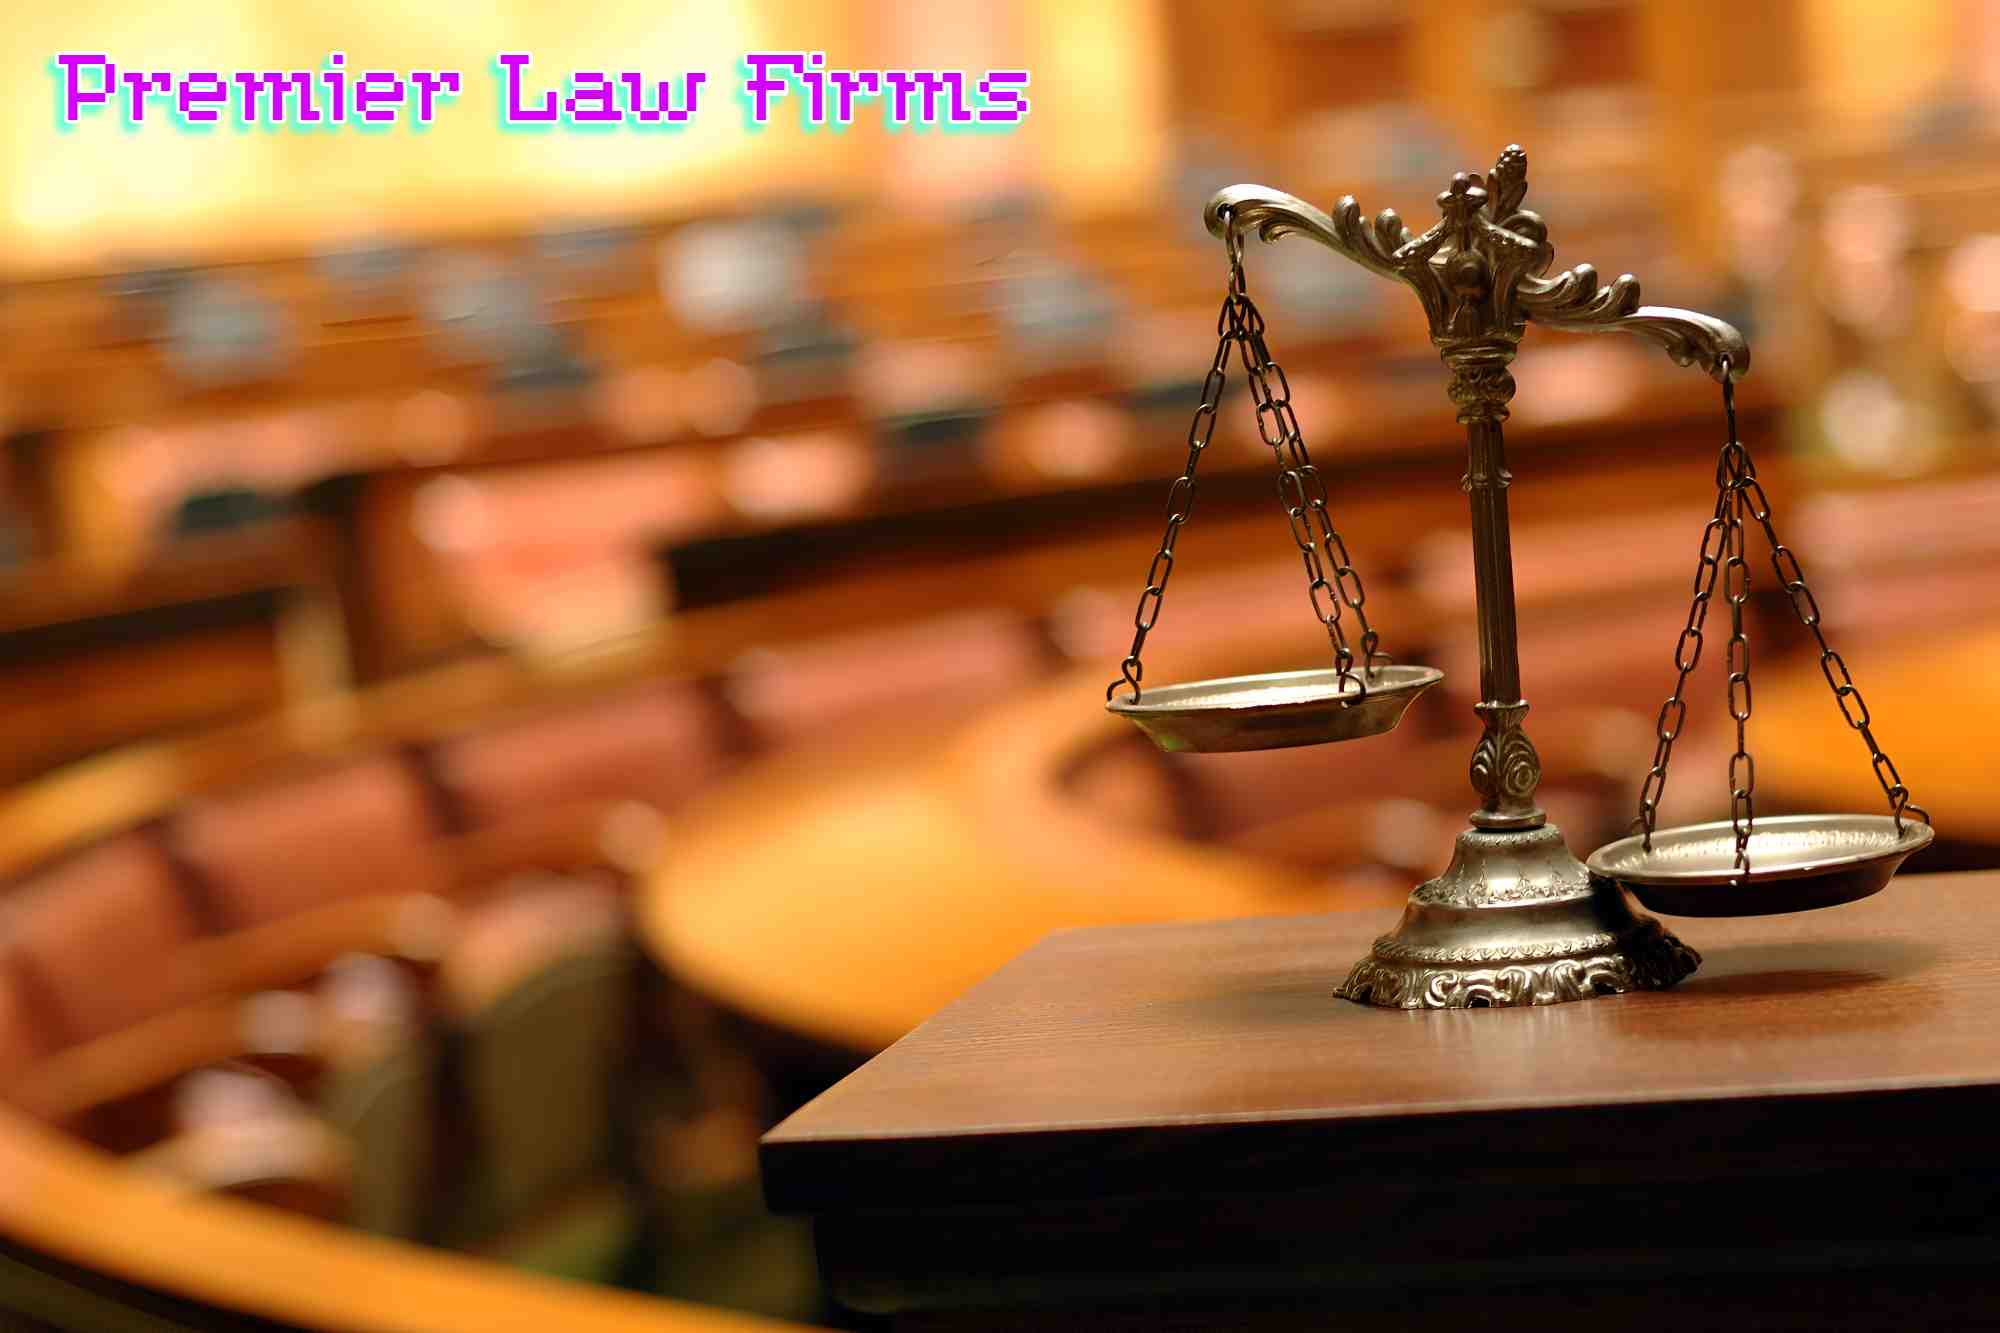 Premier Law Firms